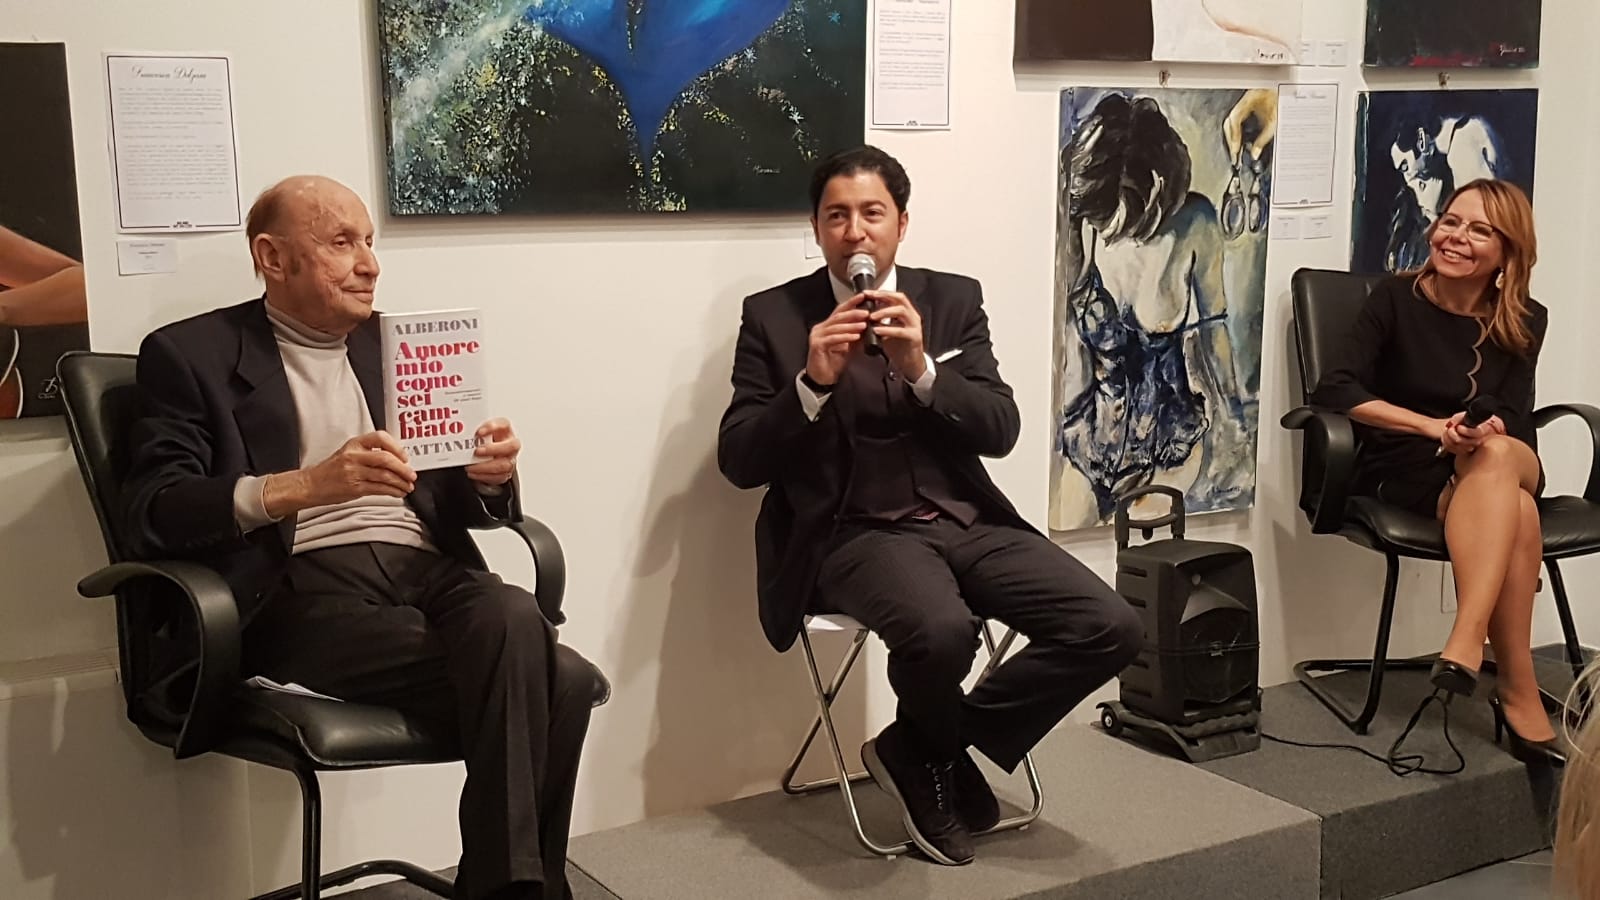 Milano Art Gallery: successo per la mostra Amore nell’Arte presentata da Francesco Alberoni